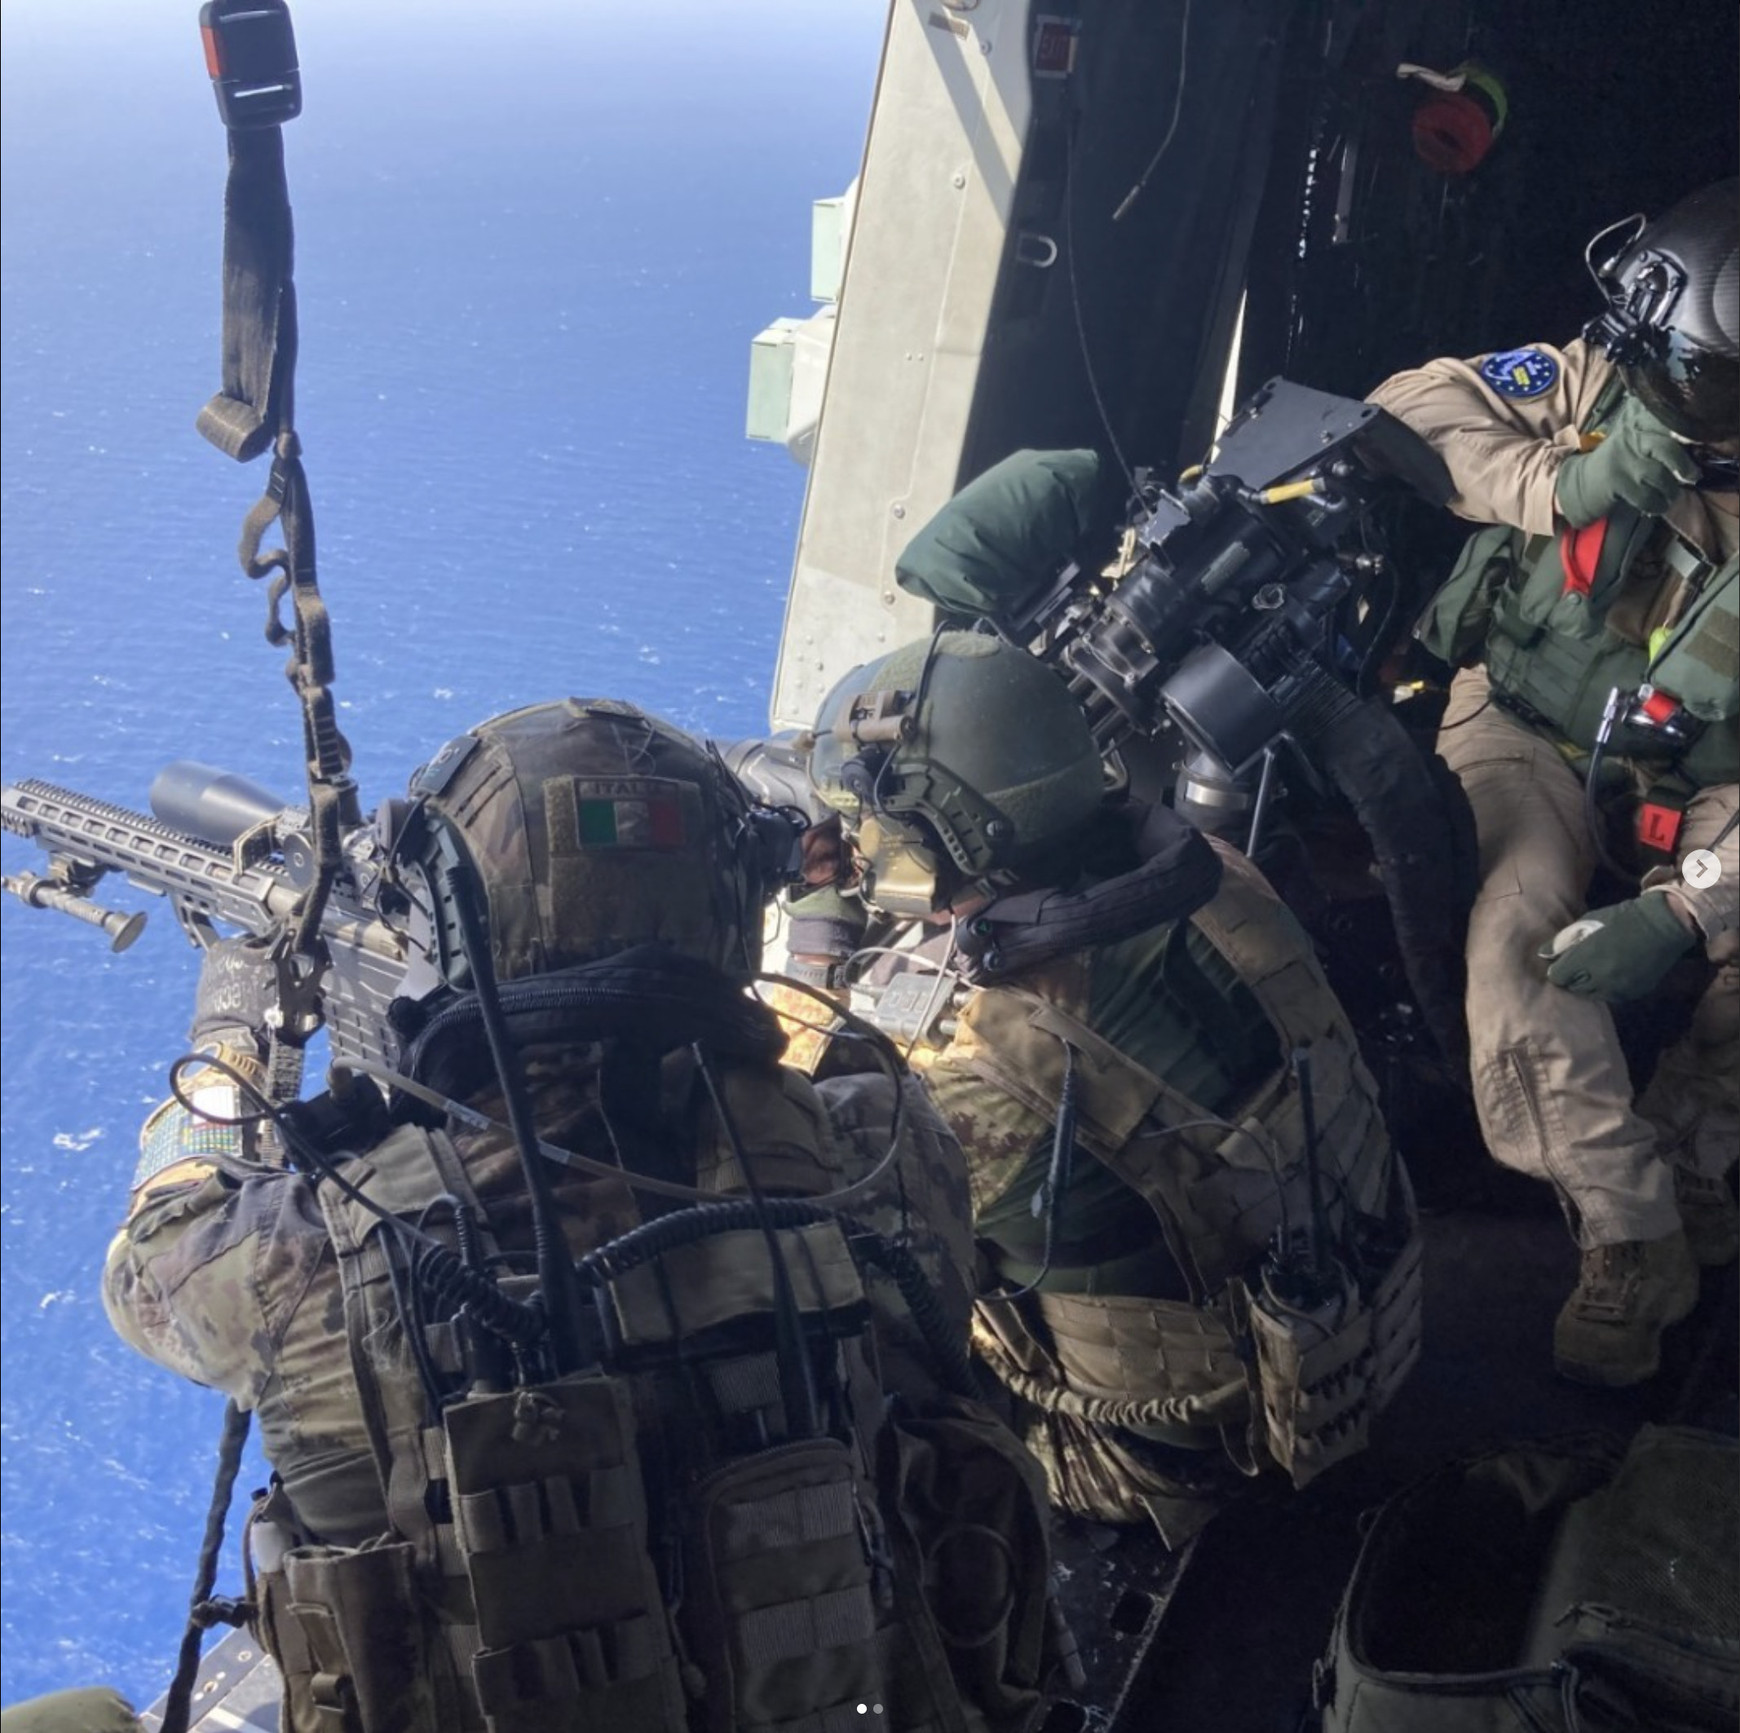 © European Union Naval Force – Operation Atalanta / IG L’opération de gestion de crise Atalanta de l’Union européenne